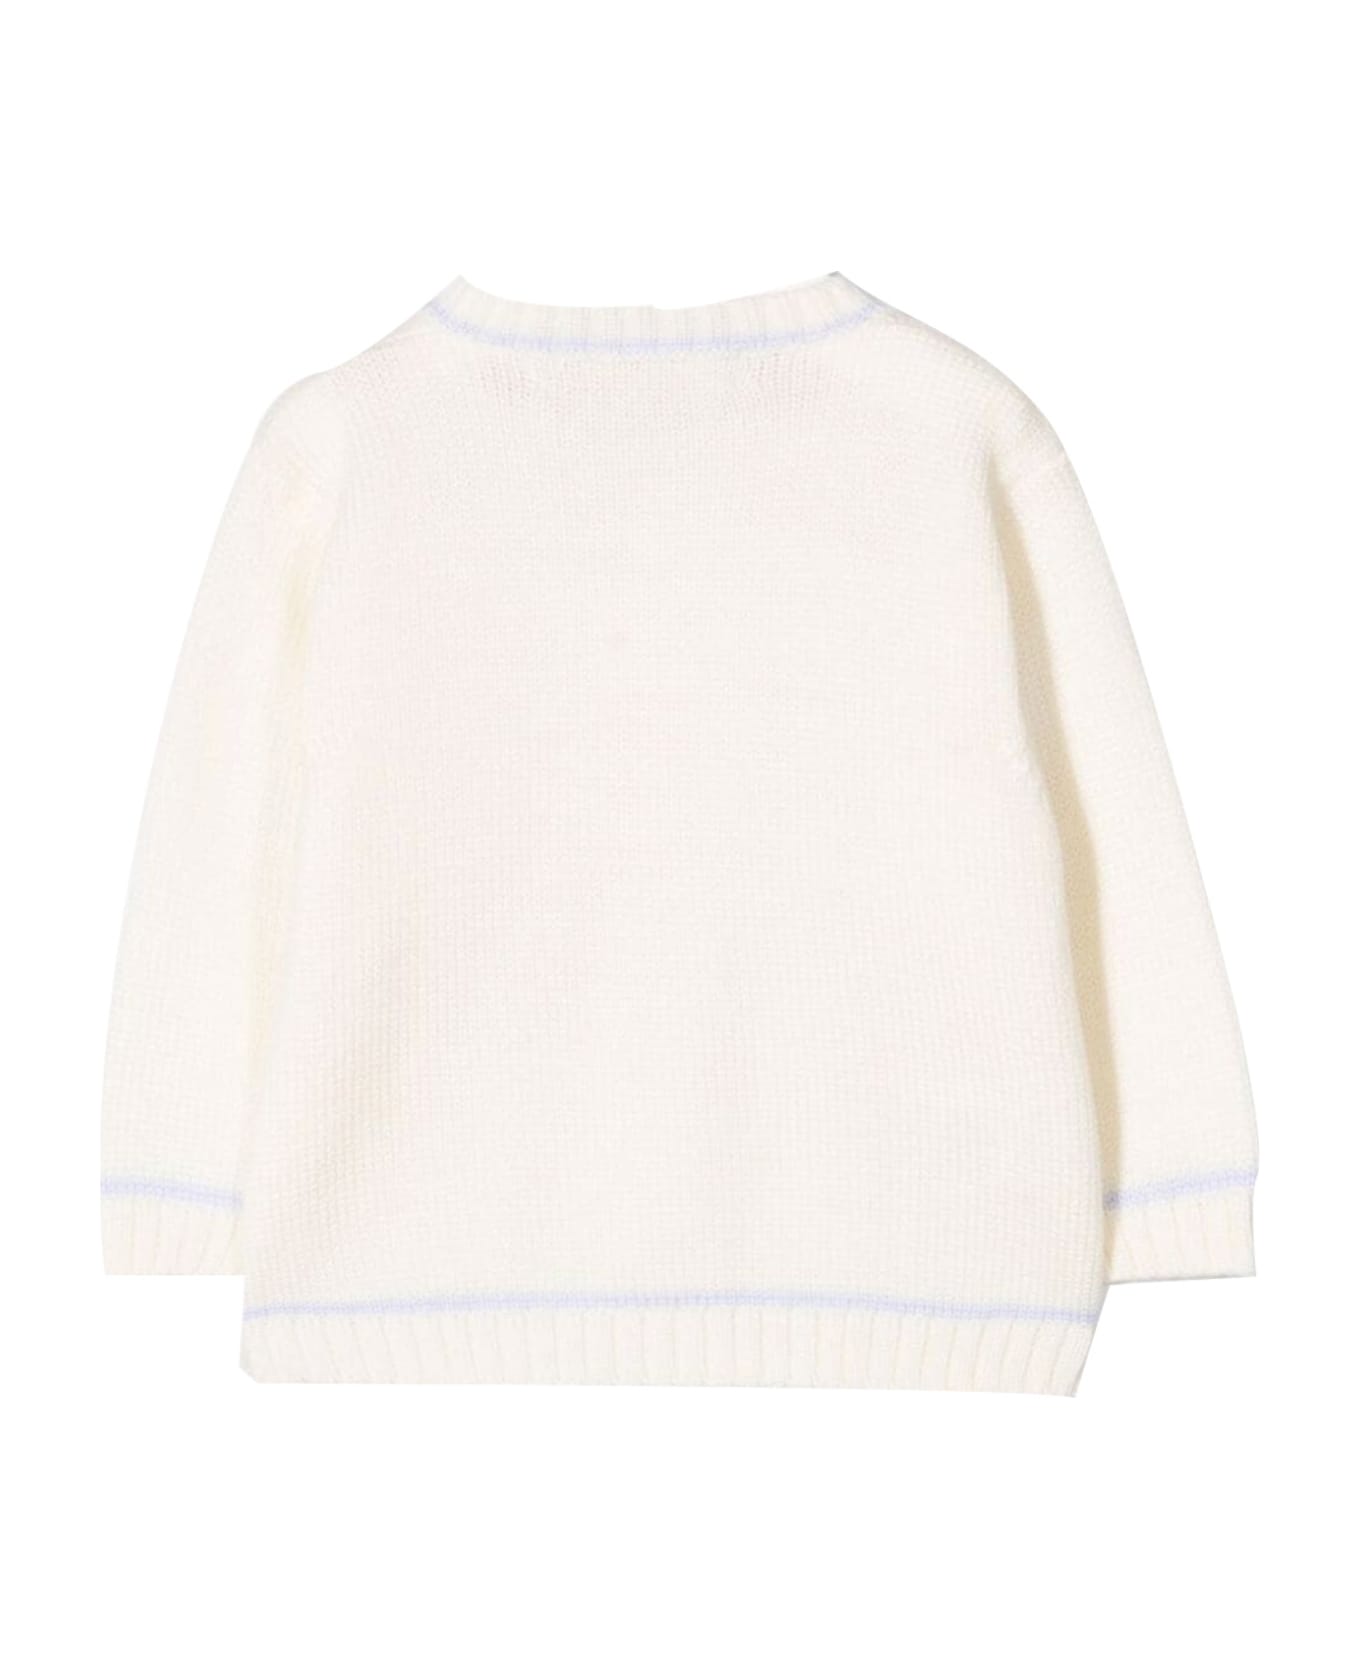 La stupenderia Cashmere Sweater - White